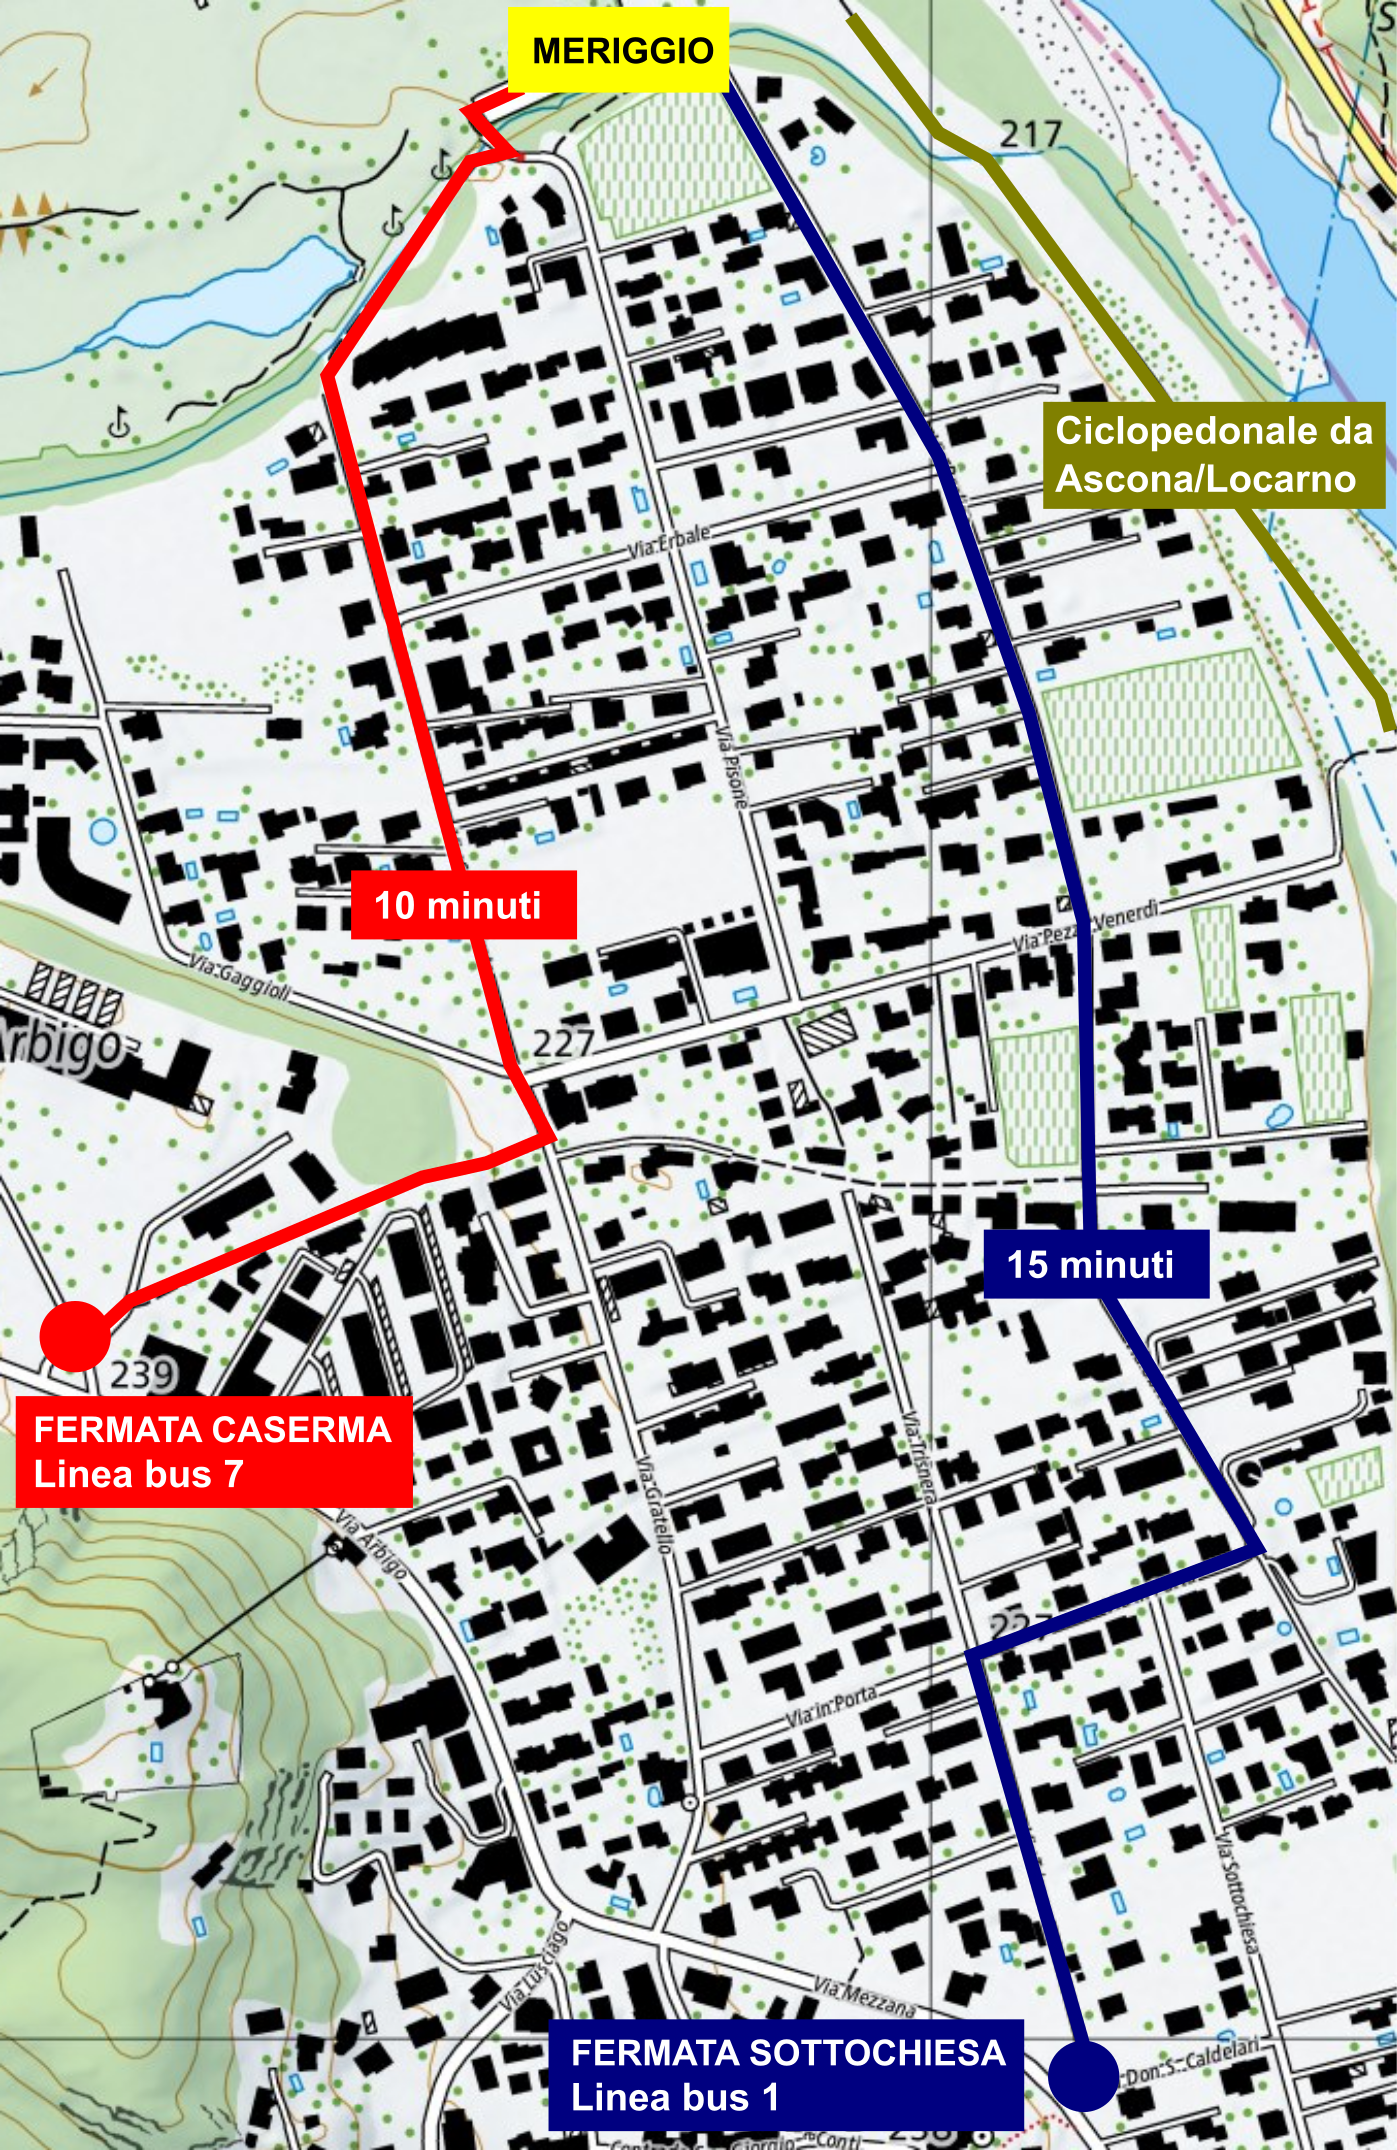 Mappa dei percorsi per raggiungere i bus dalle fermate dei bus e in bici.